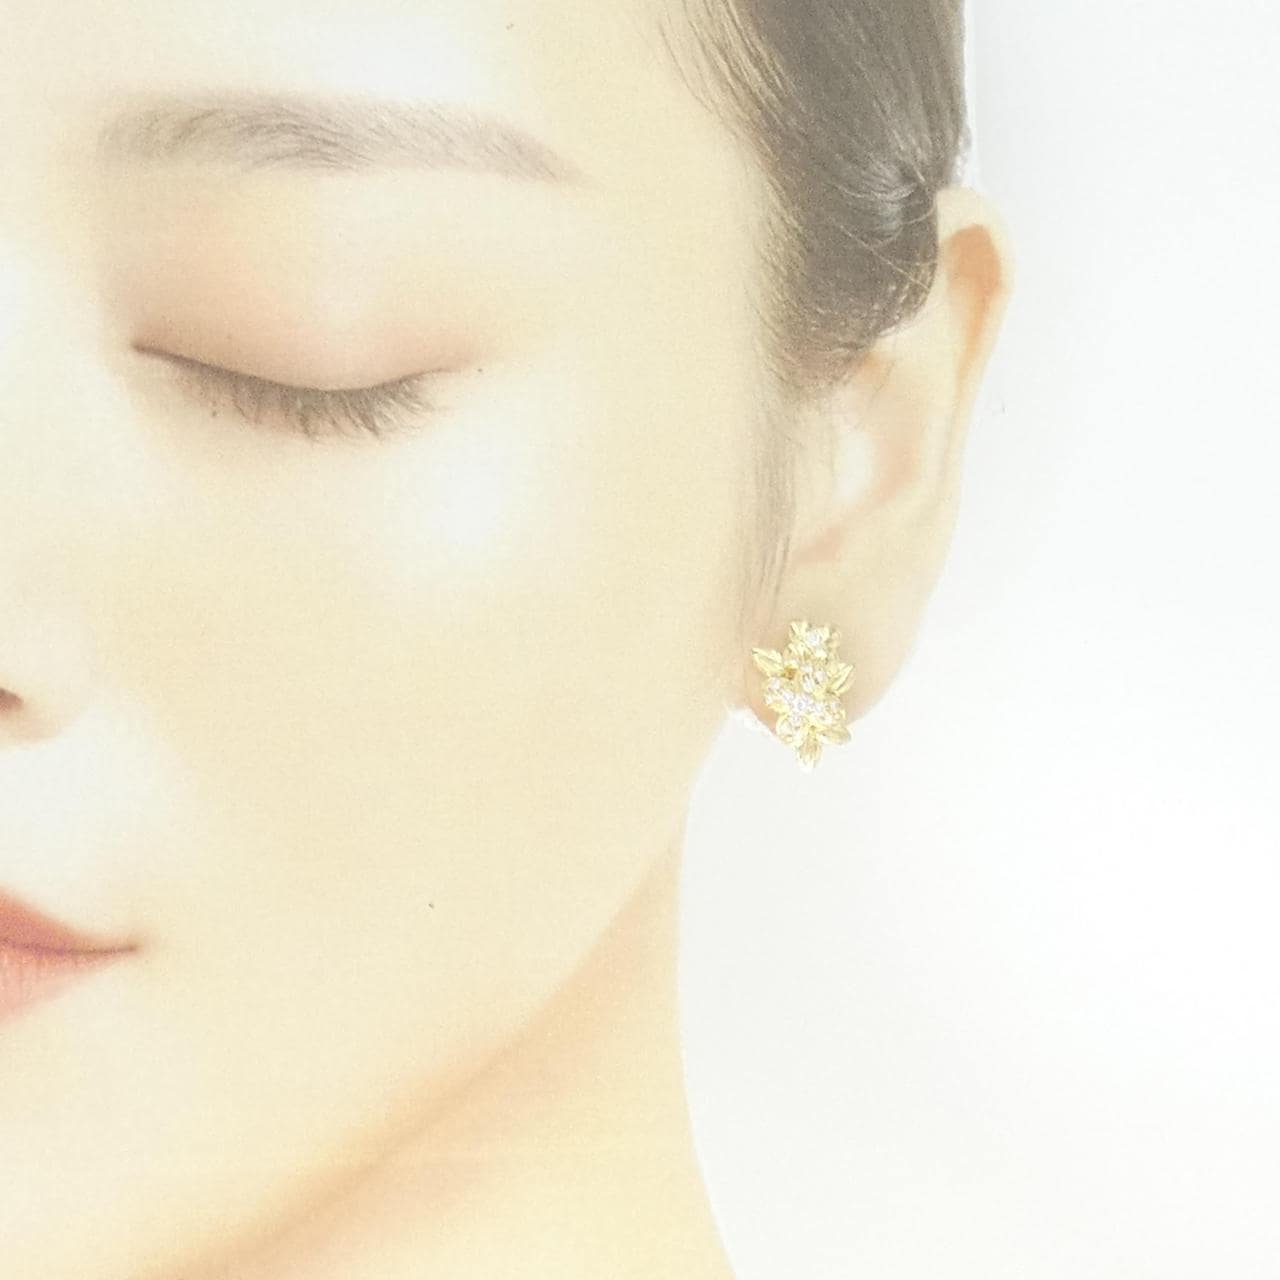 Queen Diamond earrings